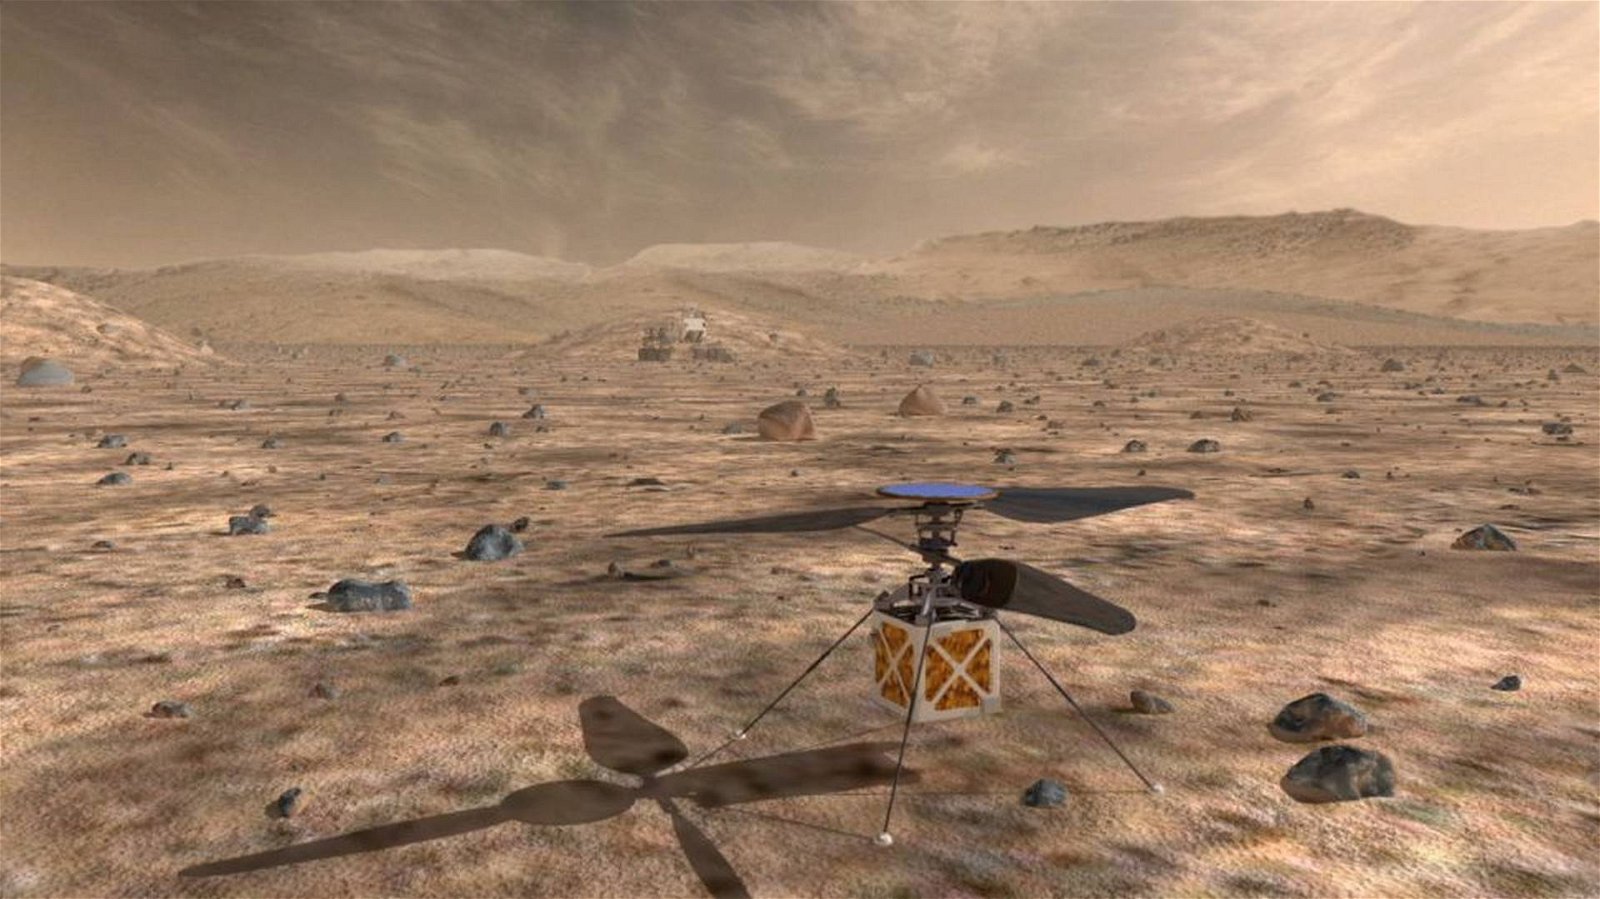 Immagine di Un elicottero della NASA volerà su Marte insieme al rover Mars 2020